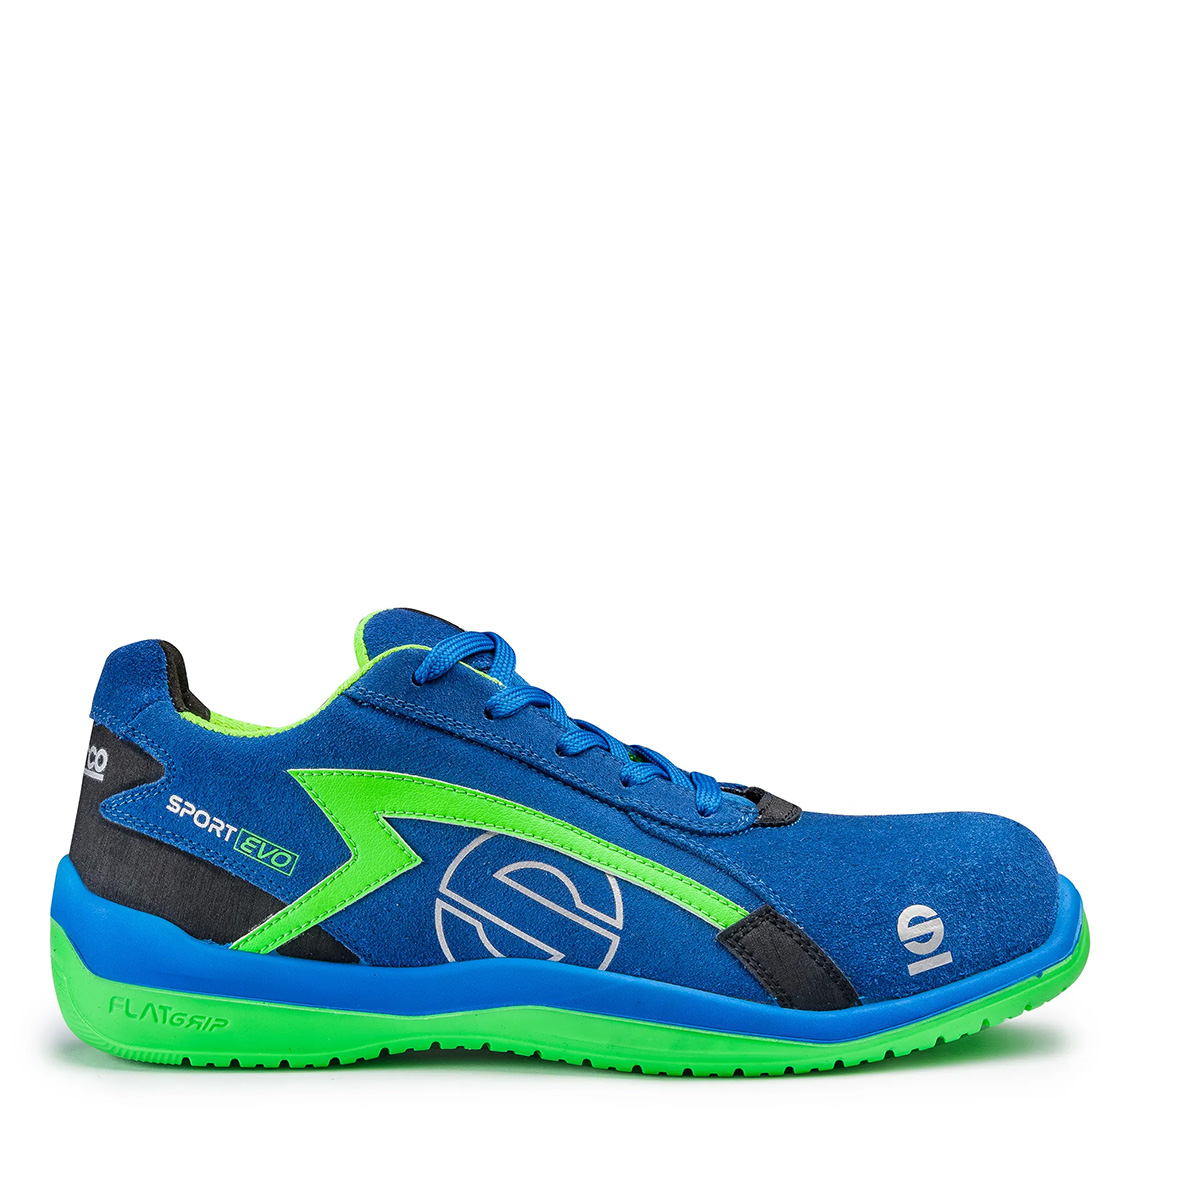 Footwear sport Evo S1P blue-green - Footwear and Workwear